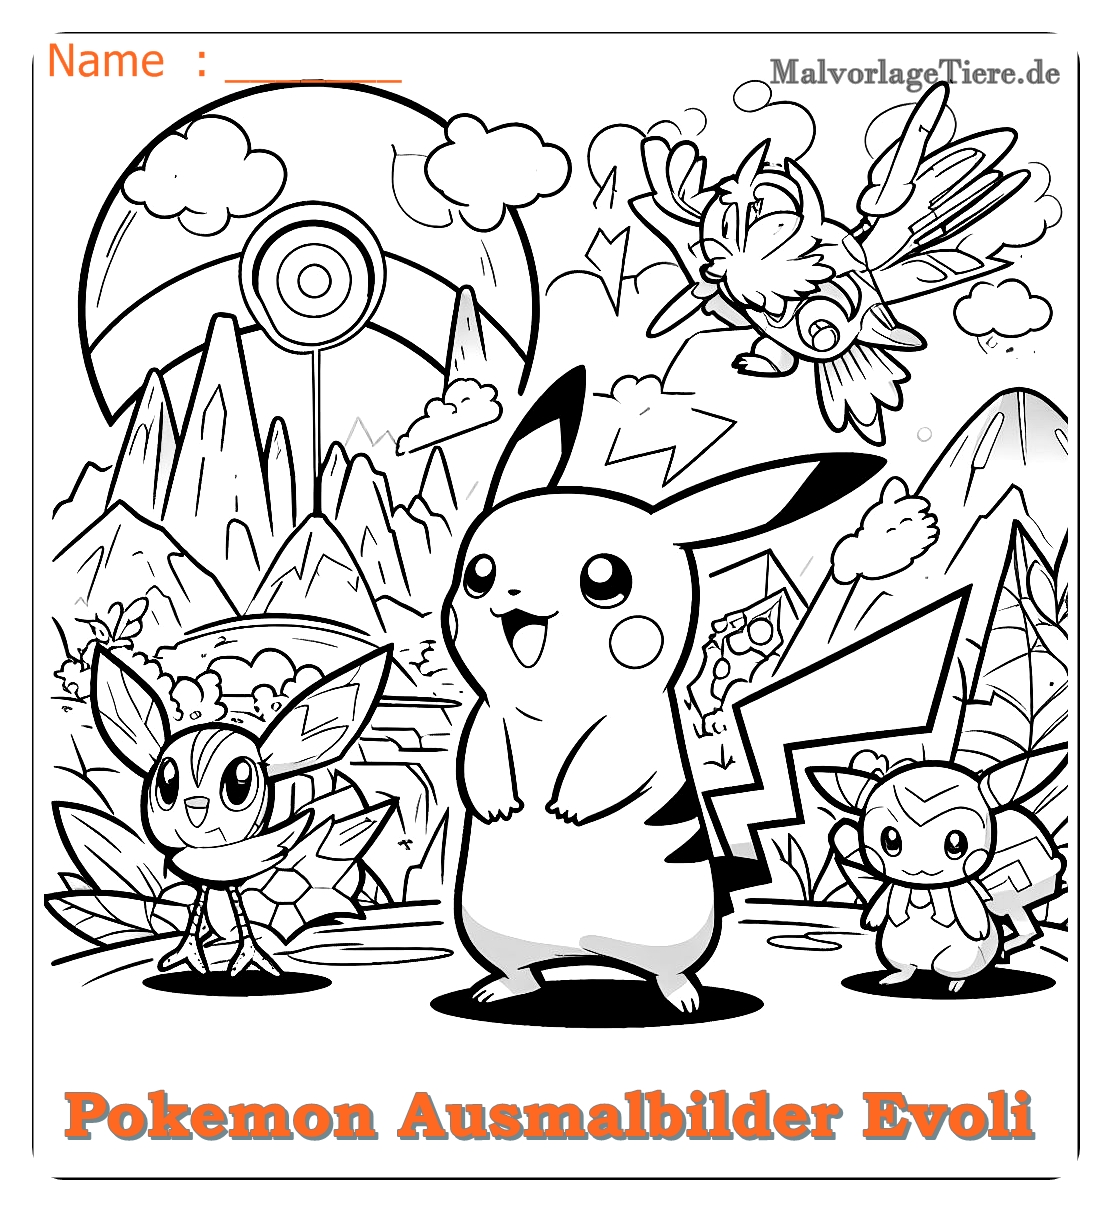 pokemon ausmalbilder evoli entwicklungen 10 by malvorlagetiere.de